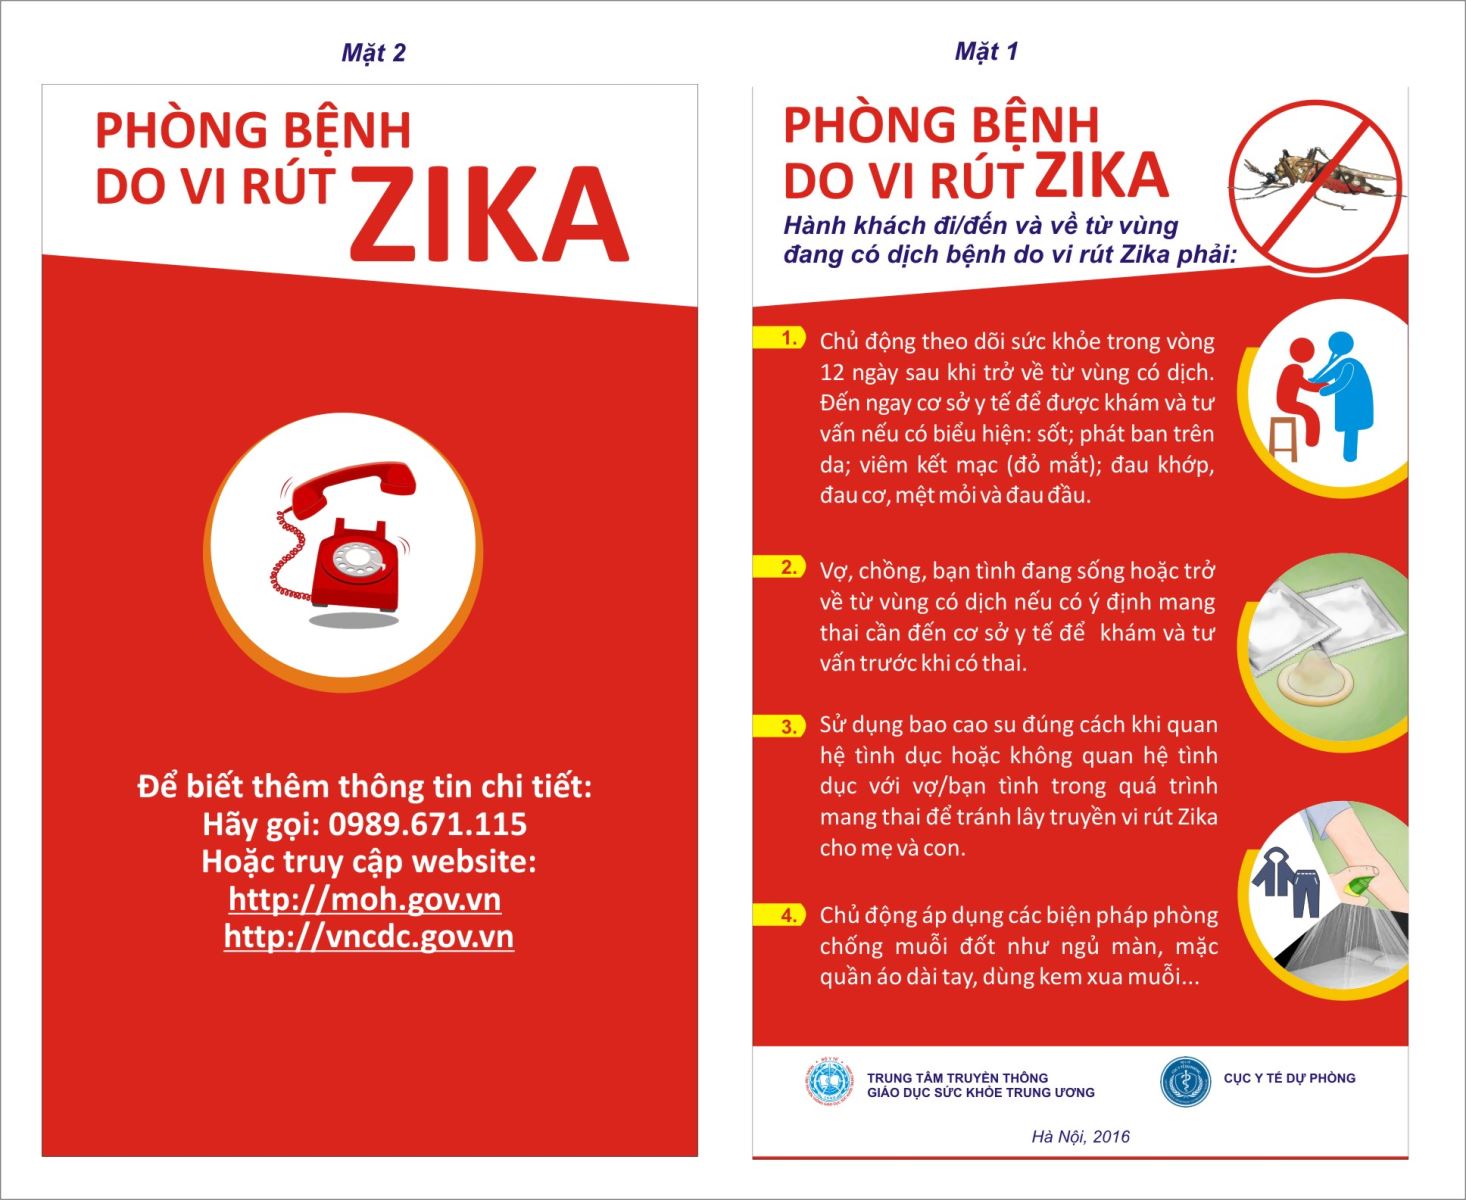 Phòng bệnh do vi rút Zika cho hành khách nhập cảnh